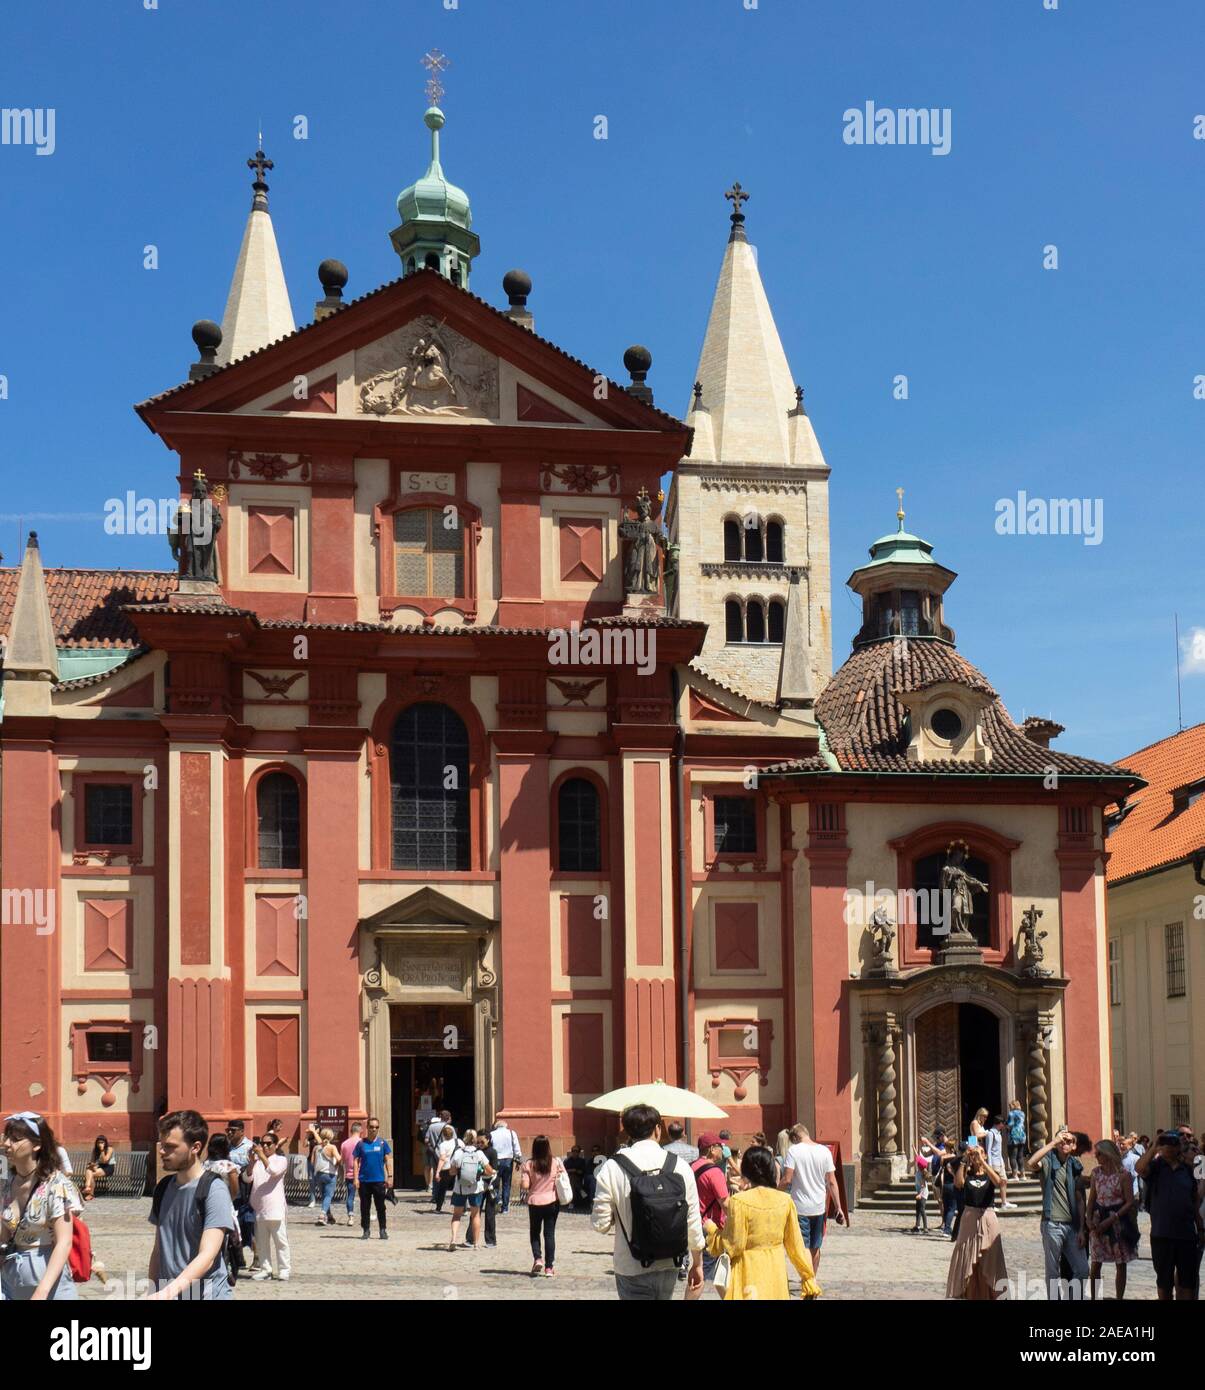 St. George's Basilica und Touristen in St. George's Square Prager Burg Komplex Prag Tschechische Republik. Stockfoto